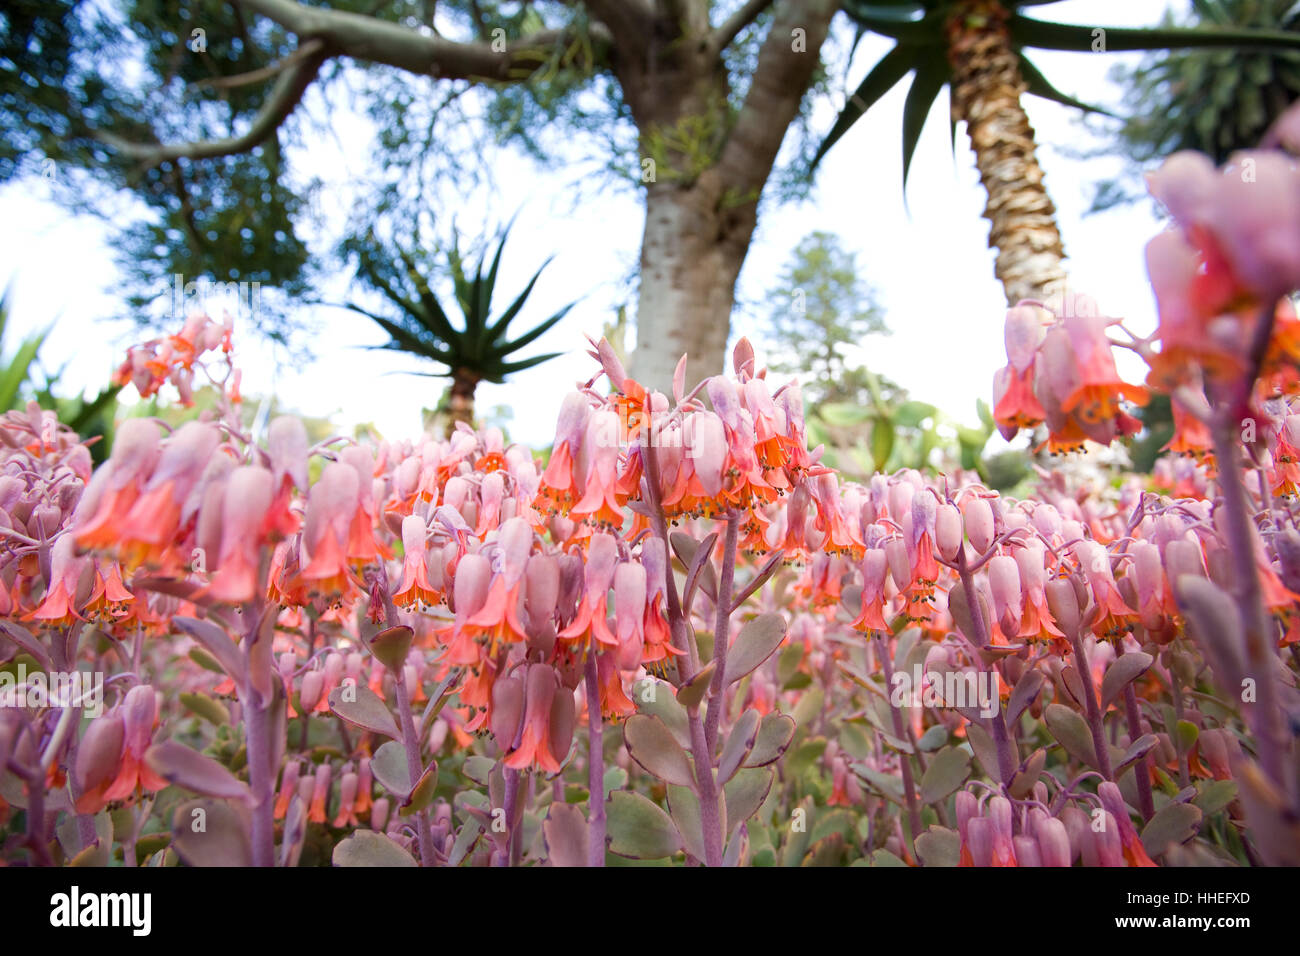 Fleurs dans le jardin botanique de Madère (Jardim Botanico da Madeira), Portugal Banque D'Images